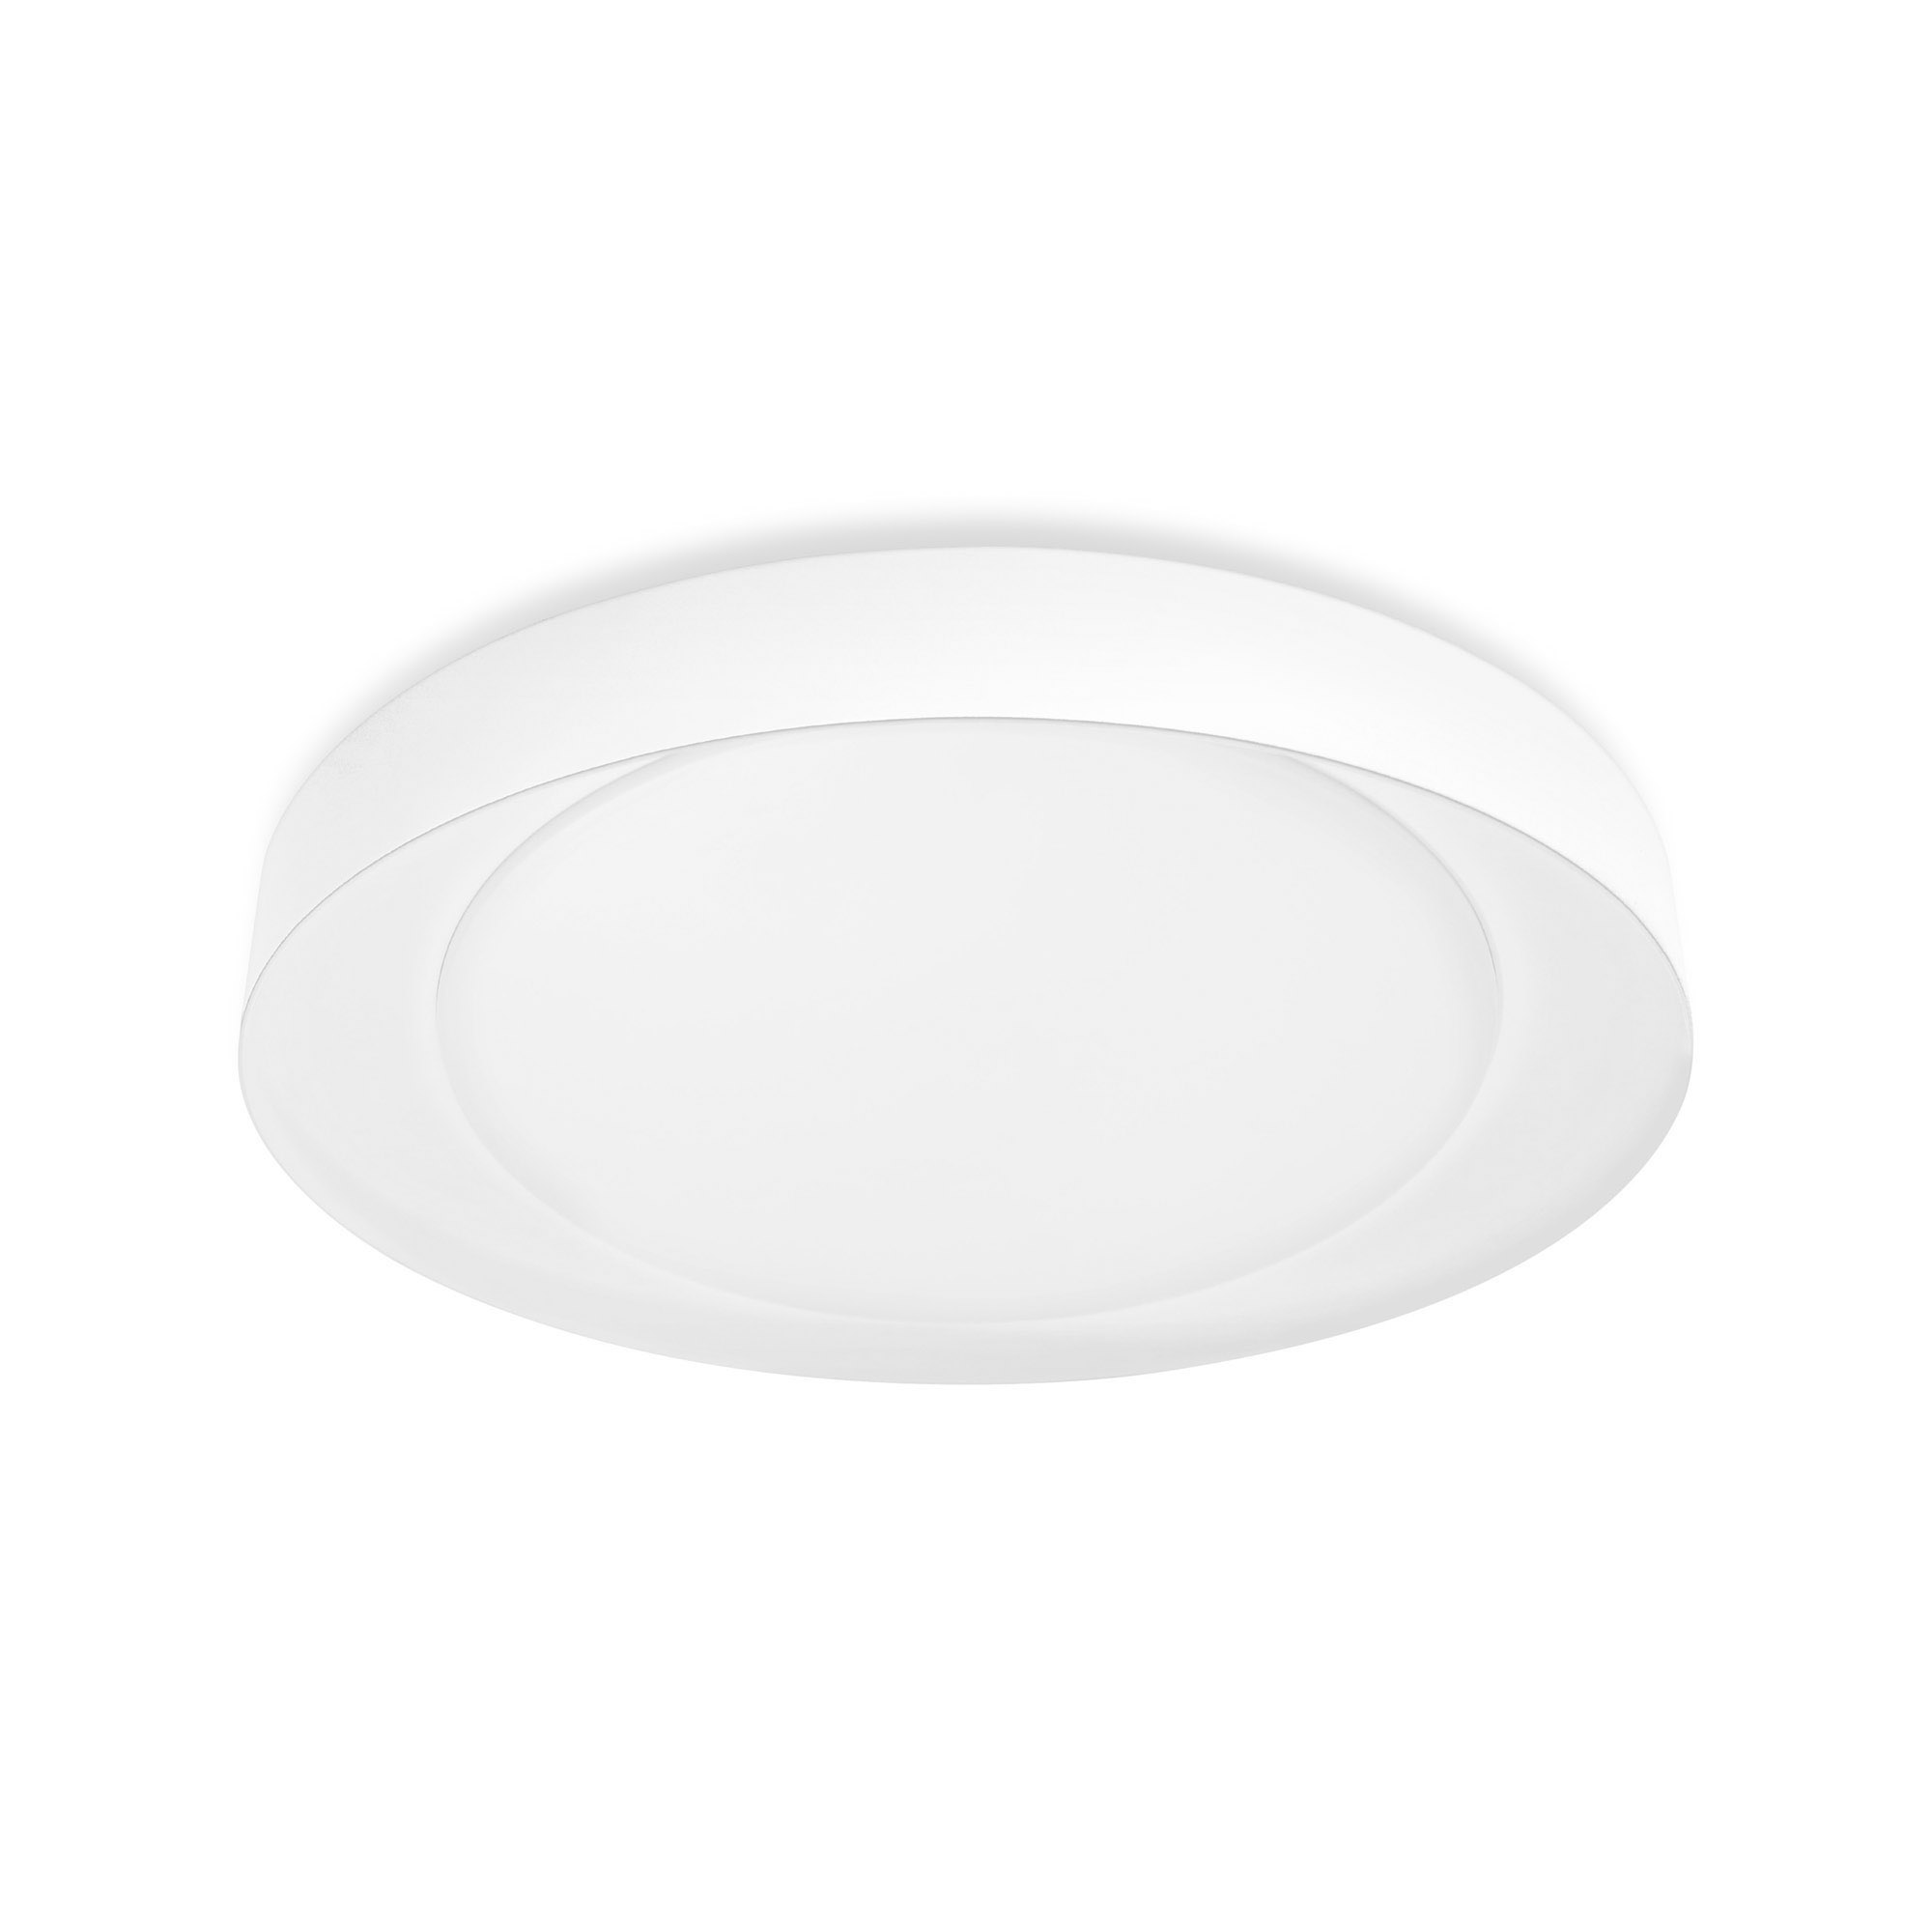 LEDVANCE SMART+ WiFi Tunable White LED Ceiling Light ORBIS Eye 490mm white 3300lm